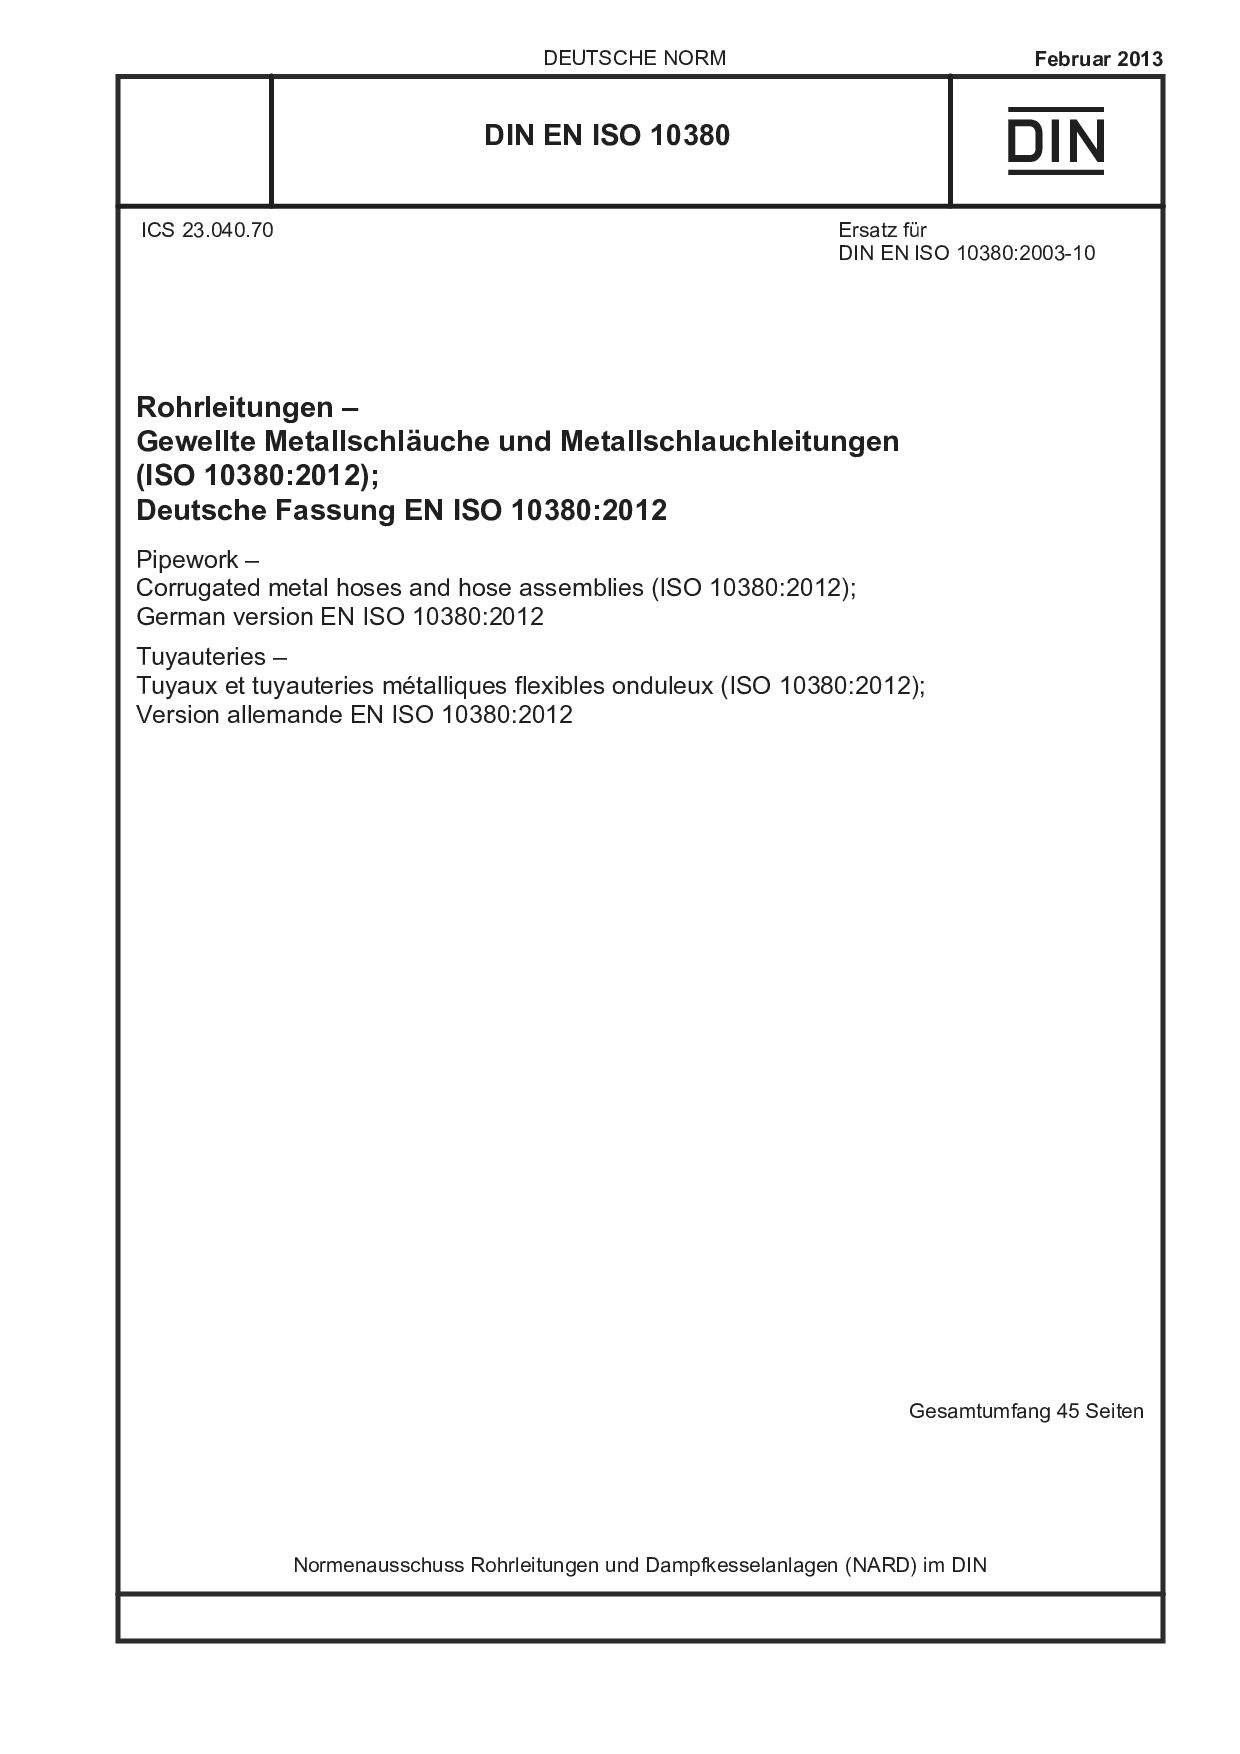 DIN EN ISO 10380:2013封面图